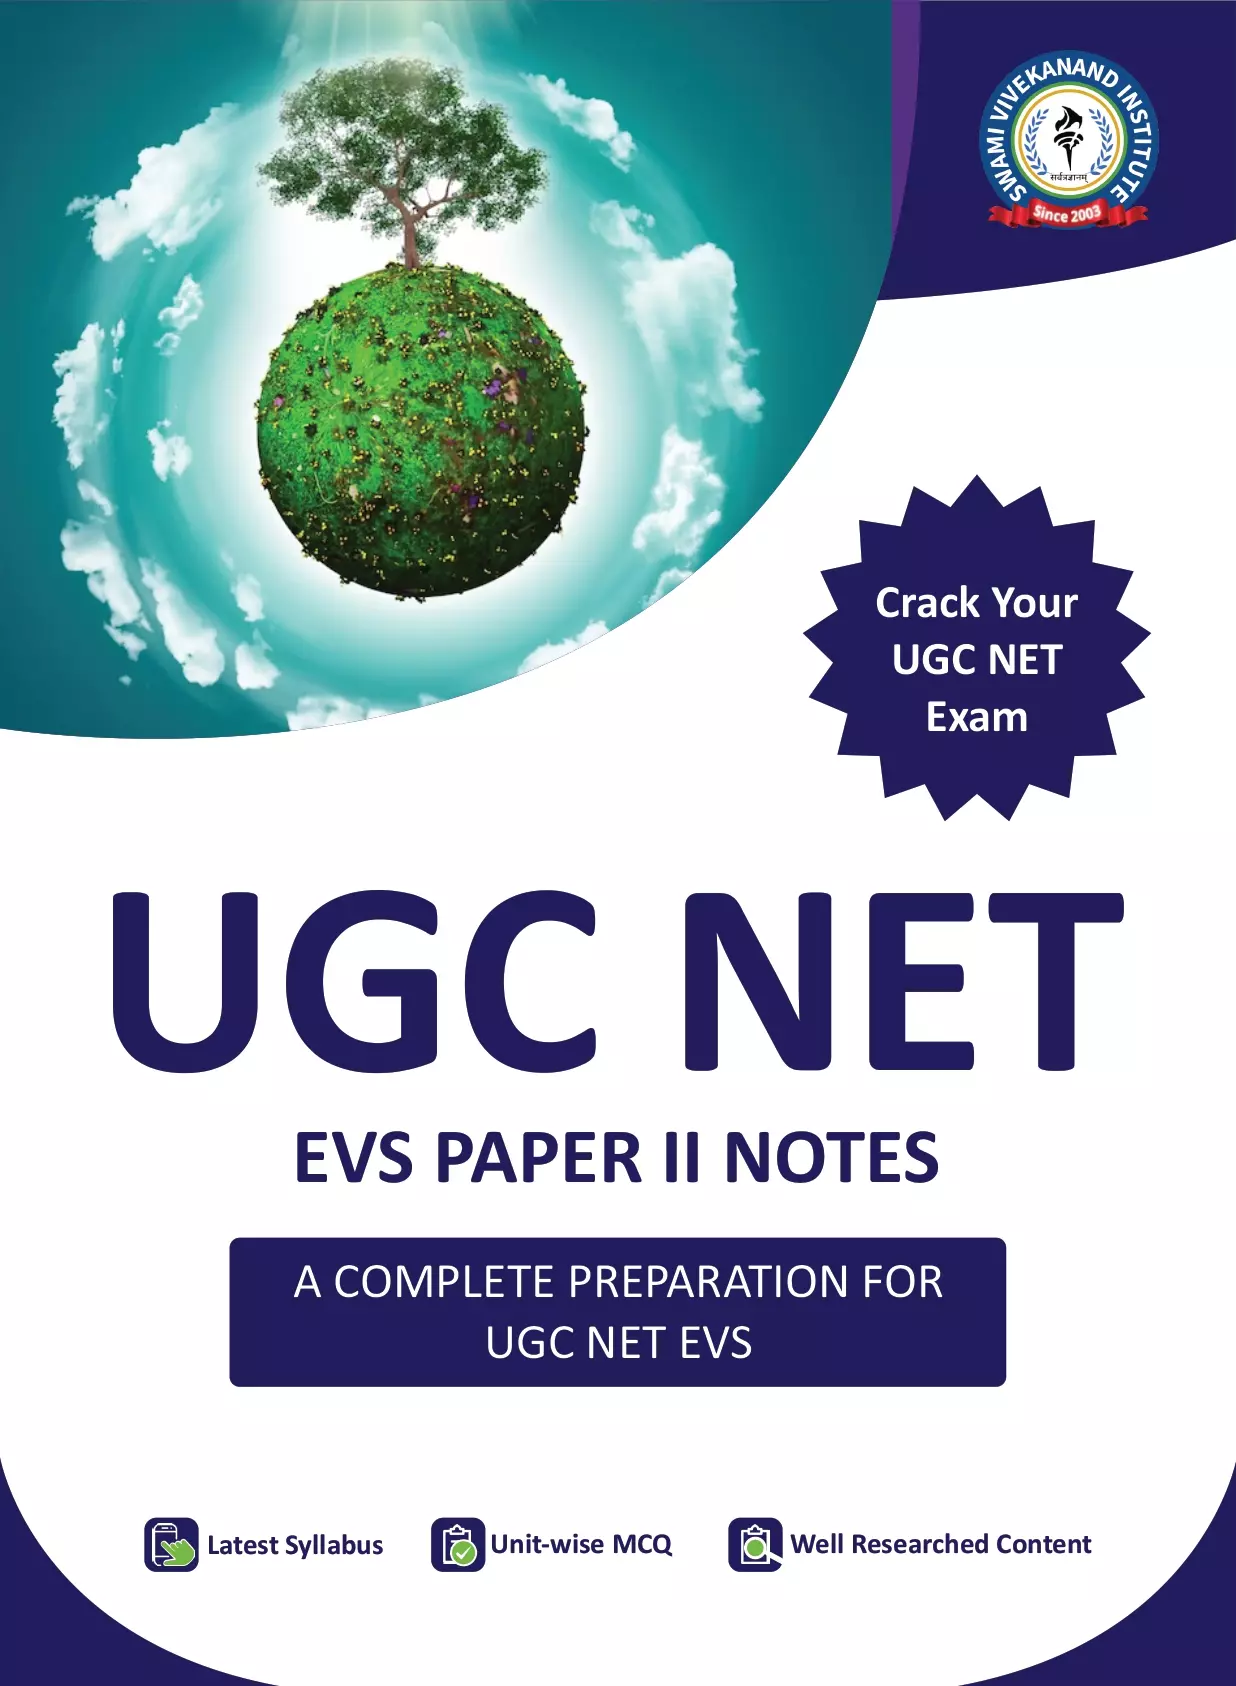 UGC NET EVS PAPER 2 NOTES